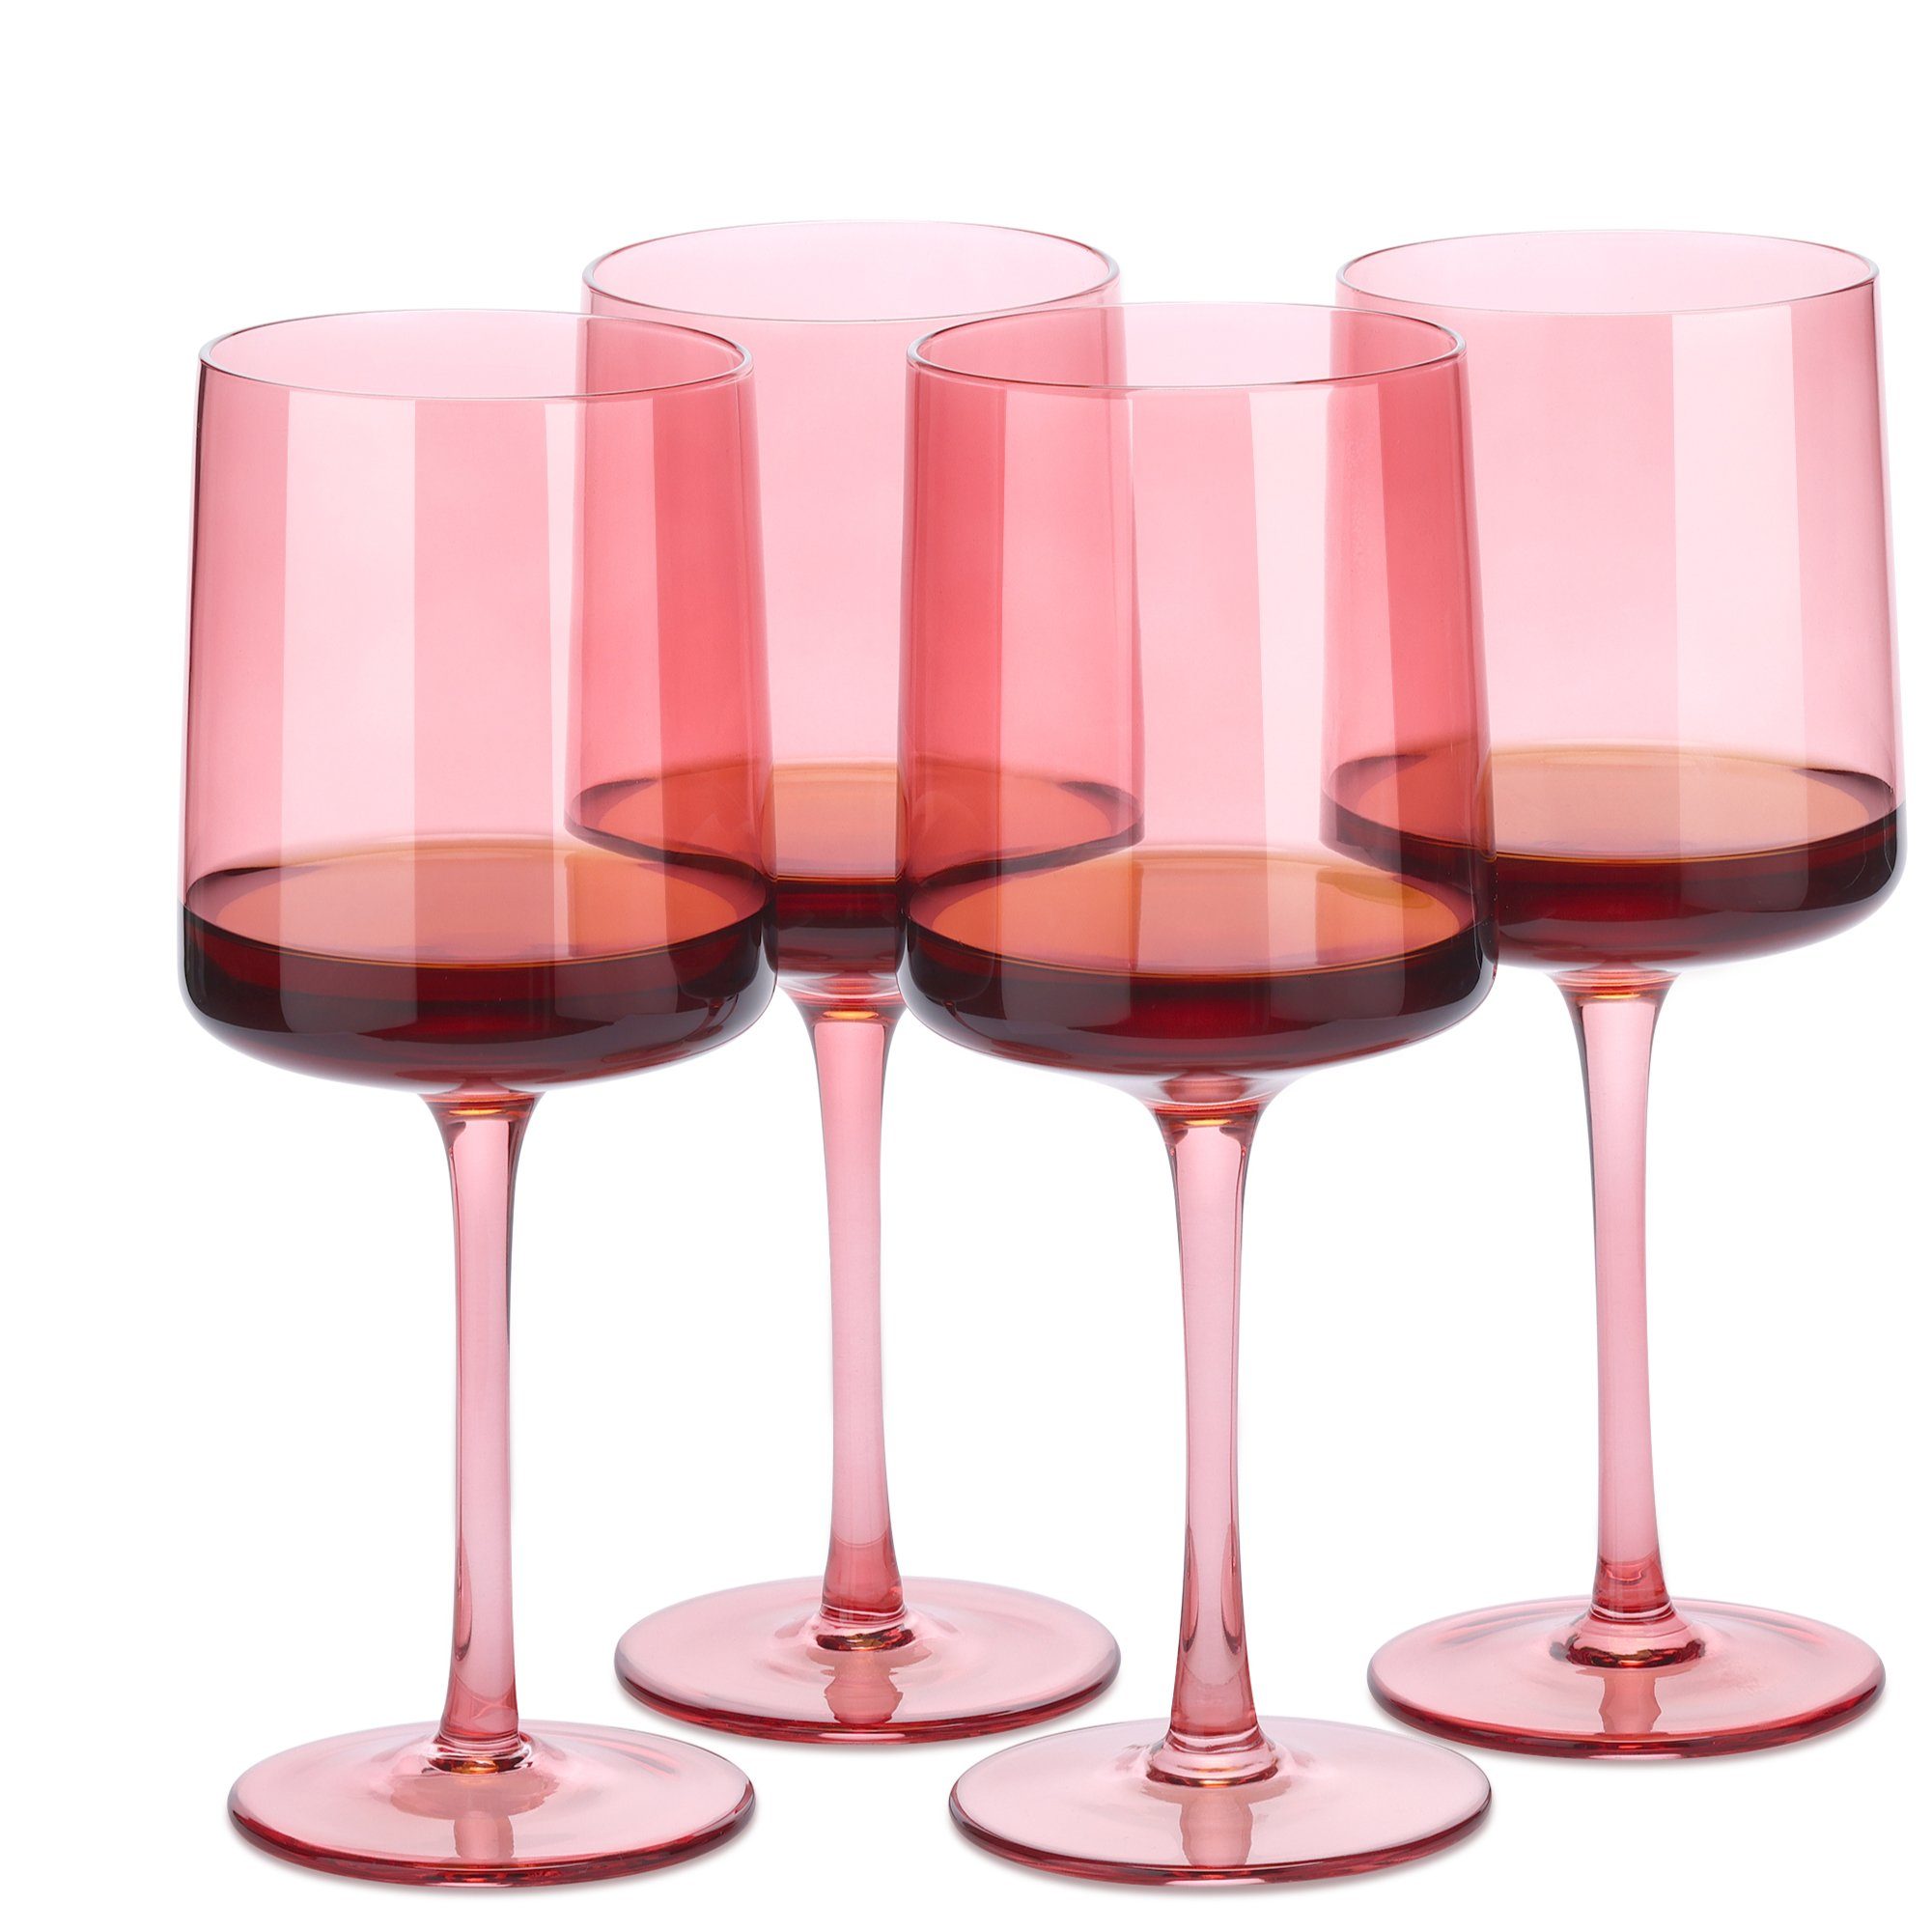 Navaris Weinglas rosa getönte Келихи 4er-Set - Farbige Келихи mit Stiel, Glas